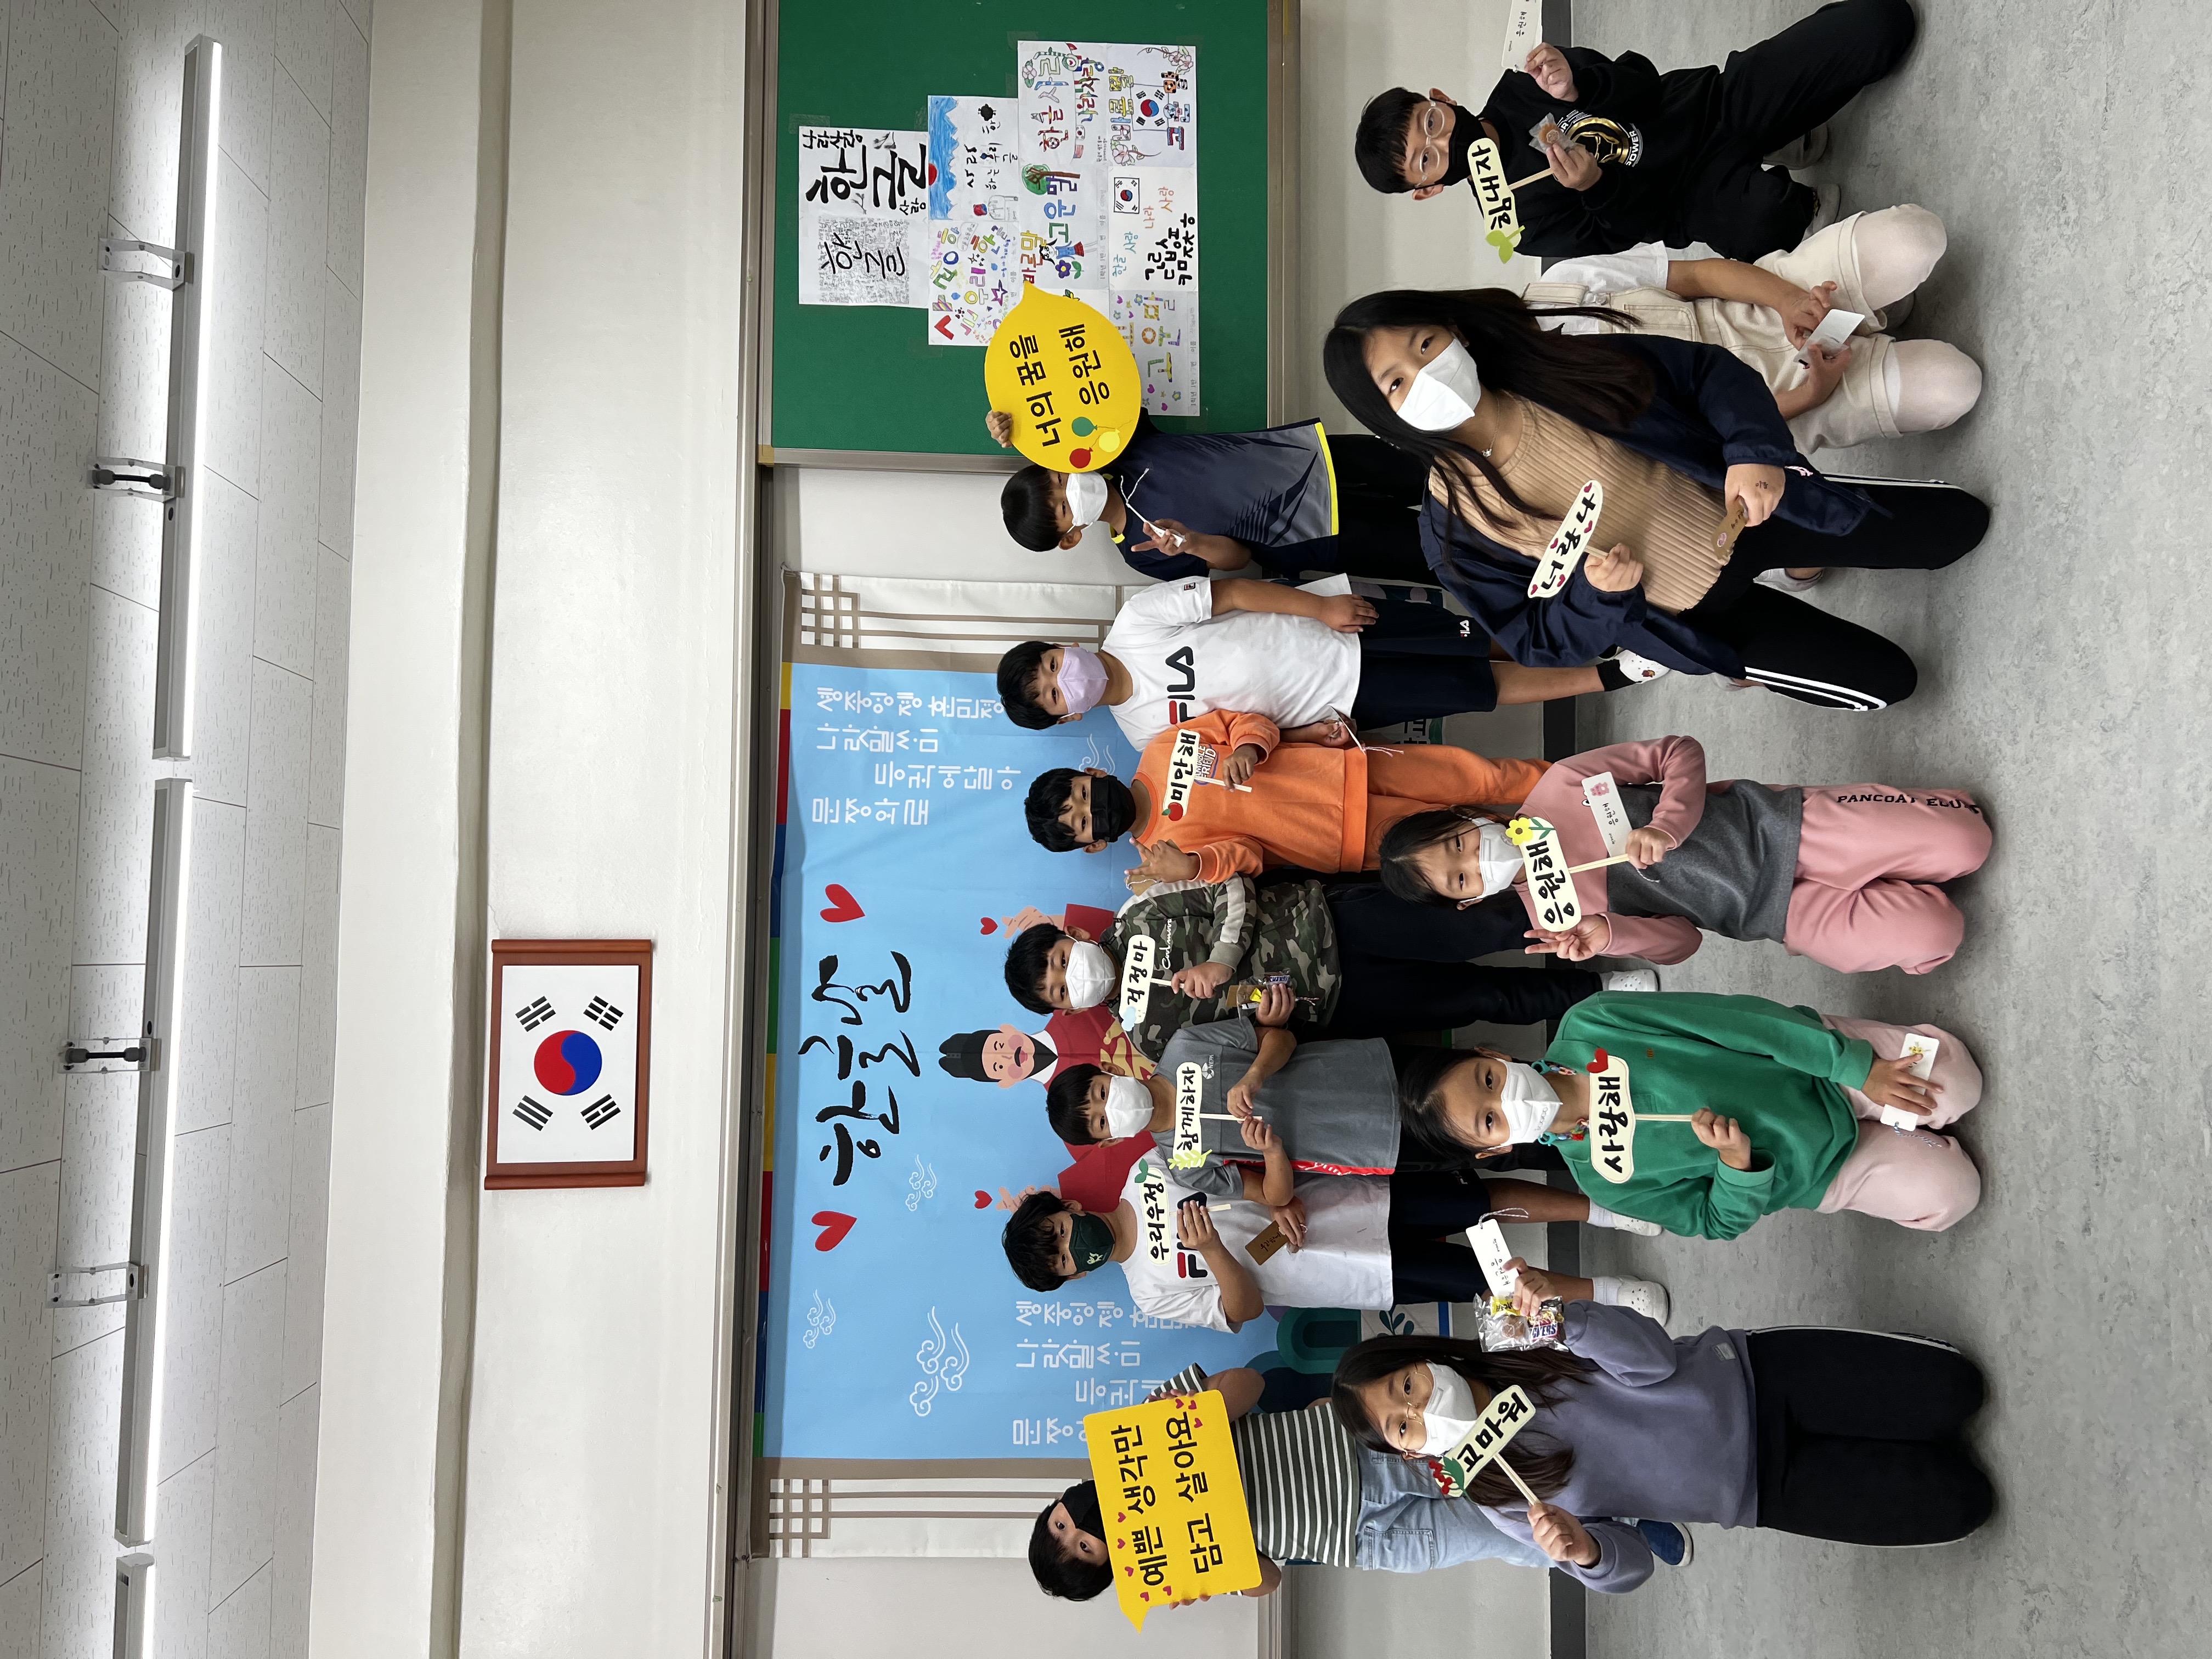 [일반] 2022년 10월 6일 학부모회 주관 한글날 캠페인 활동 사진입니다.(3학년)의 첨부이미지 1